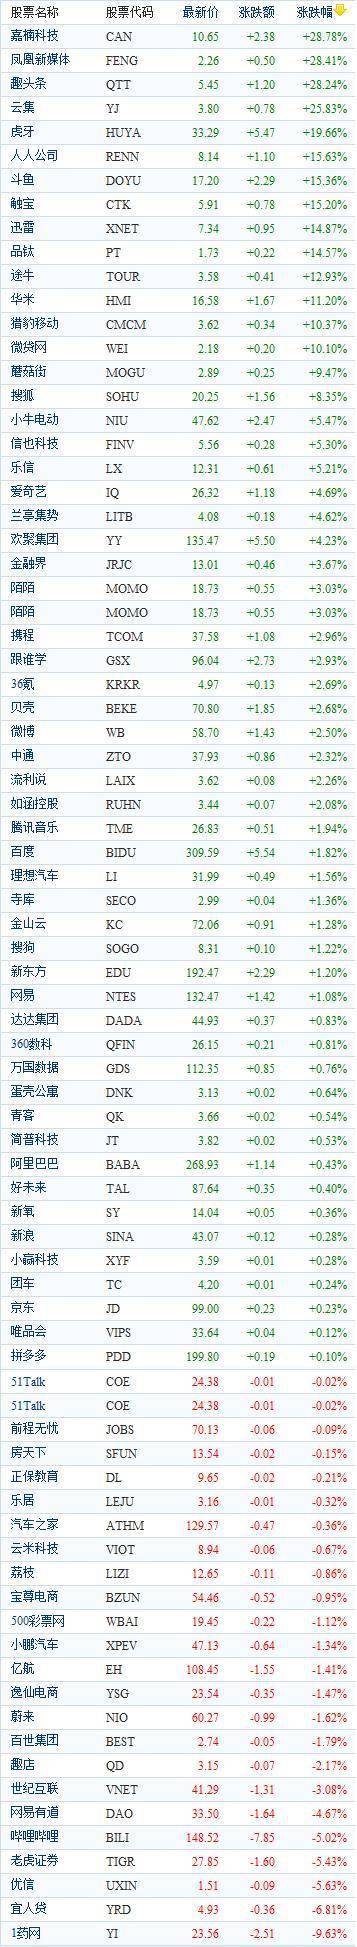 中国概念股周四收盘涨跌互现 趣头条涨幅均超28%、1药网重挫近10%